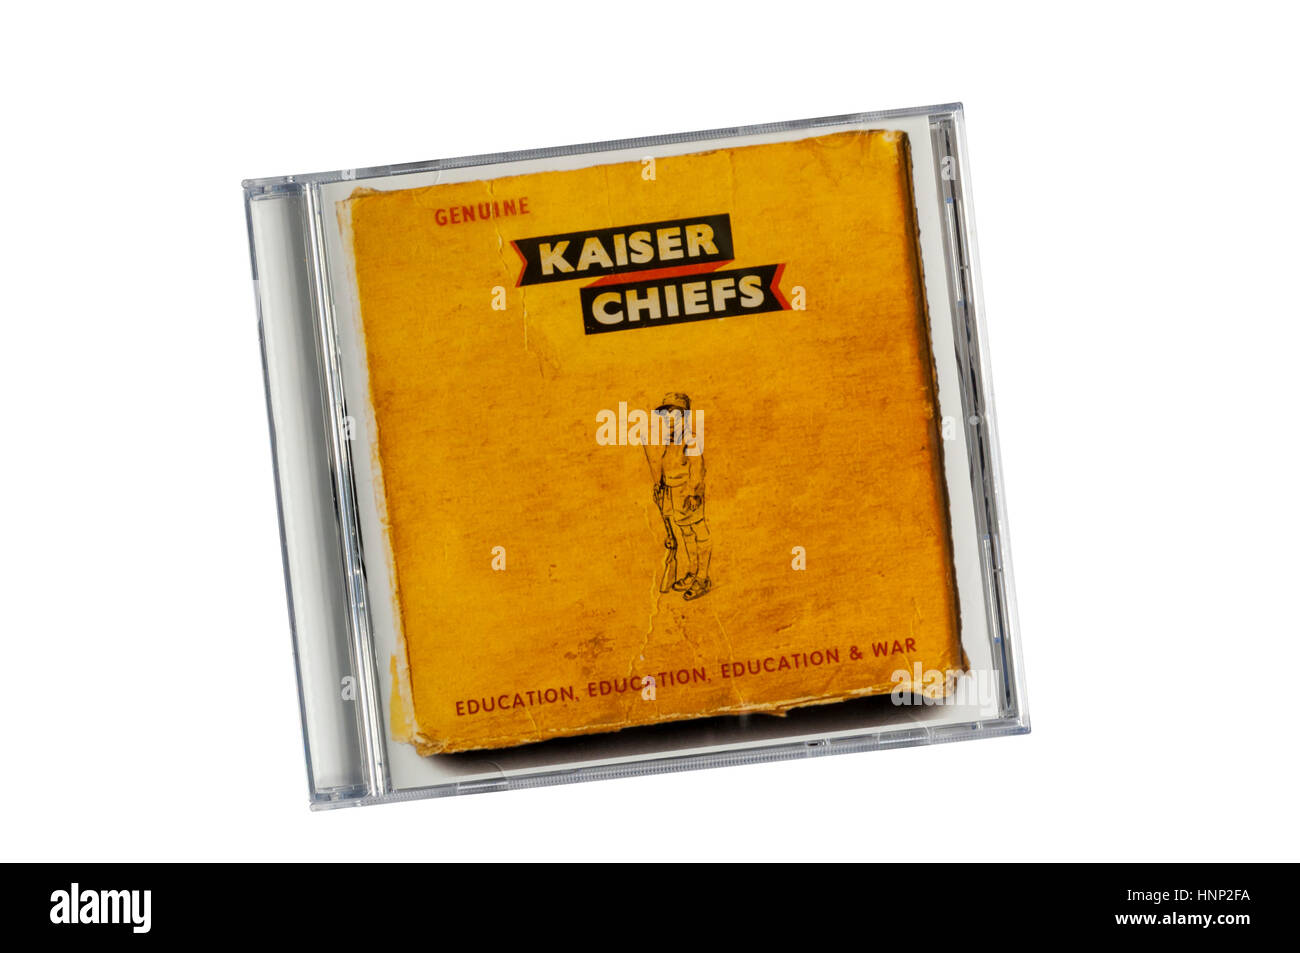 Education, Education, Education & war war das 5th erschienene Studioalbum der englischen Rockband Kaiser Chiefs. Veröffentlicht im März 2014. Stockfoto